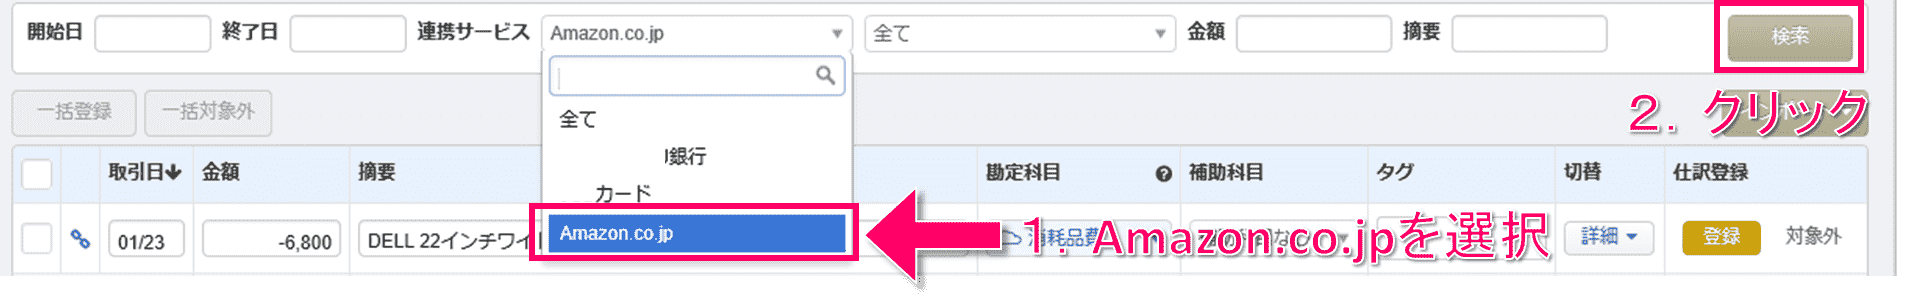 マネーフォワードクラウド会計の連携サービス一覧画面から「Amazon.co.jp」を選択